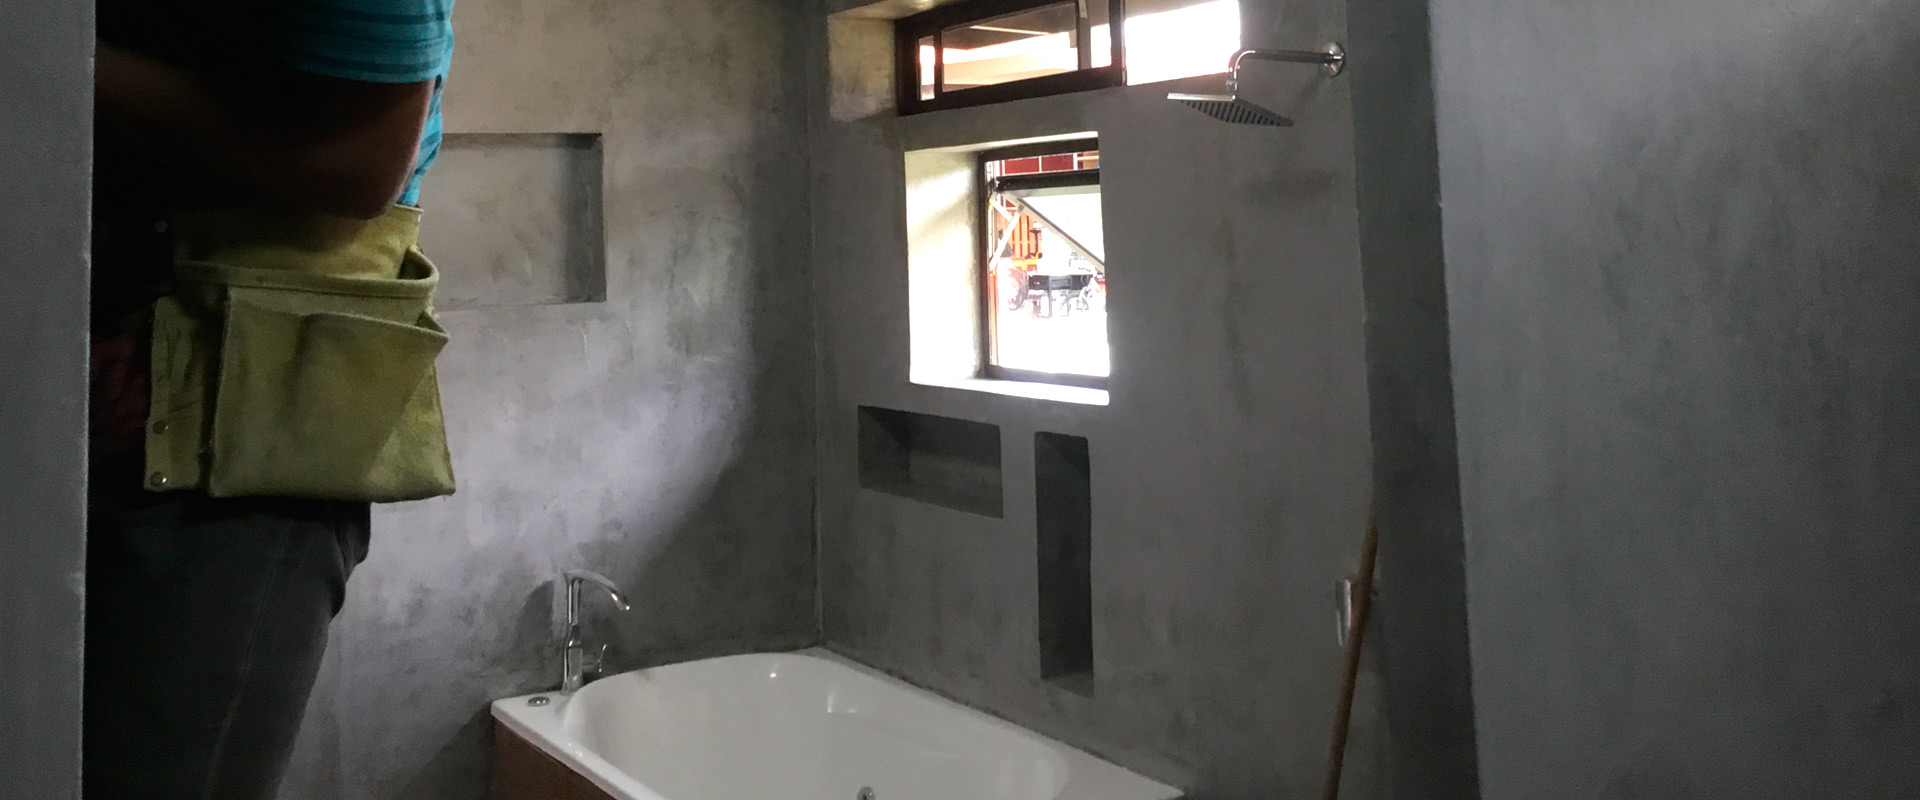 Instalación de bañeras, Roman's Diseño Interior Remodelaciones